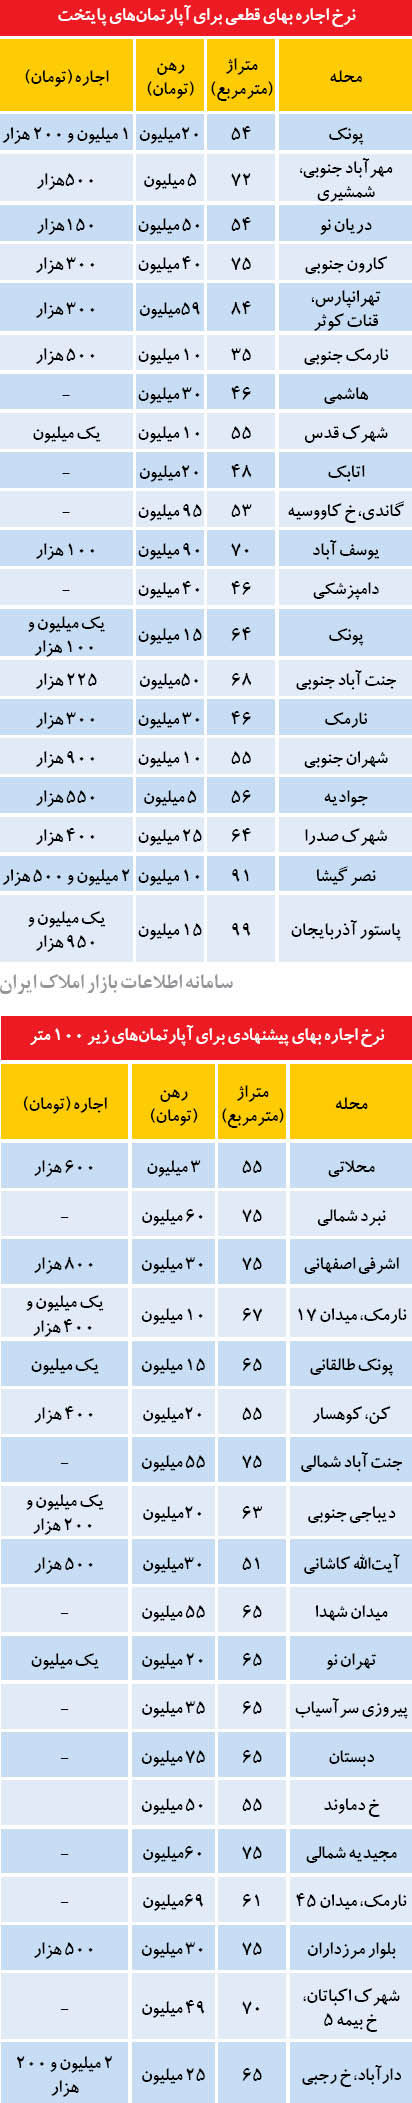 قیمت پاییزی اجاره مسکن در تهران